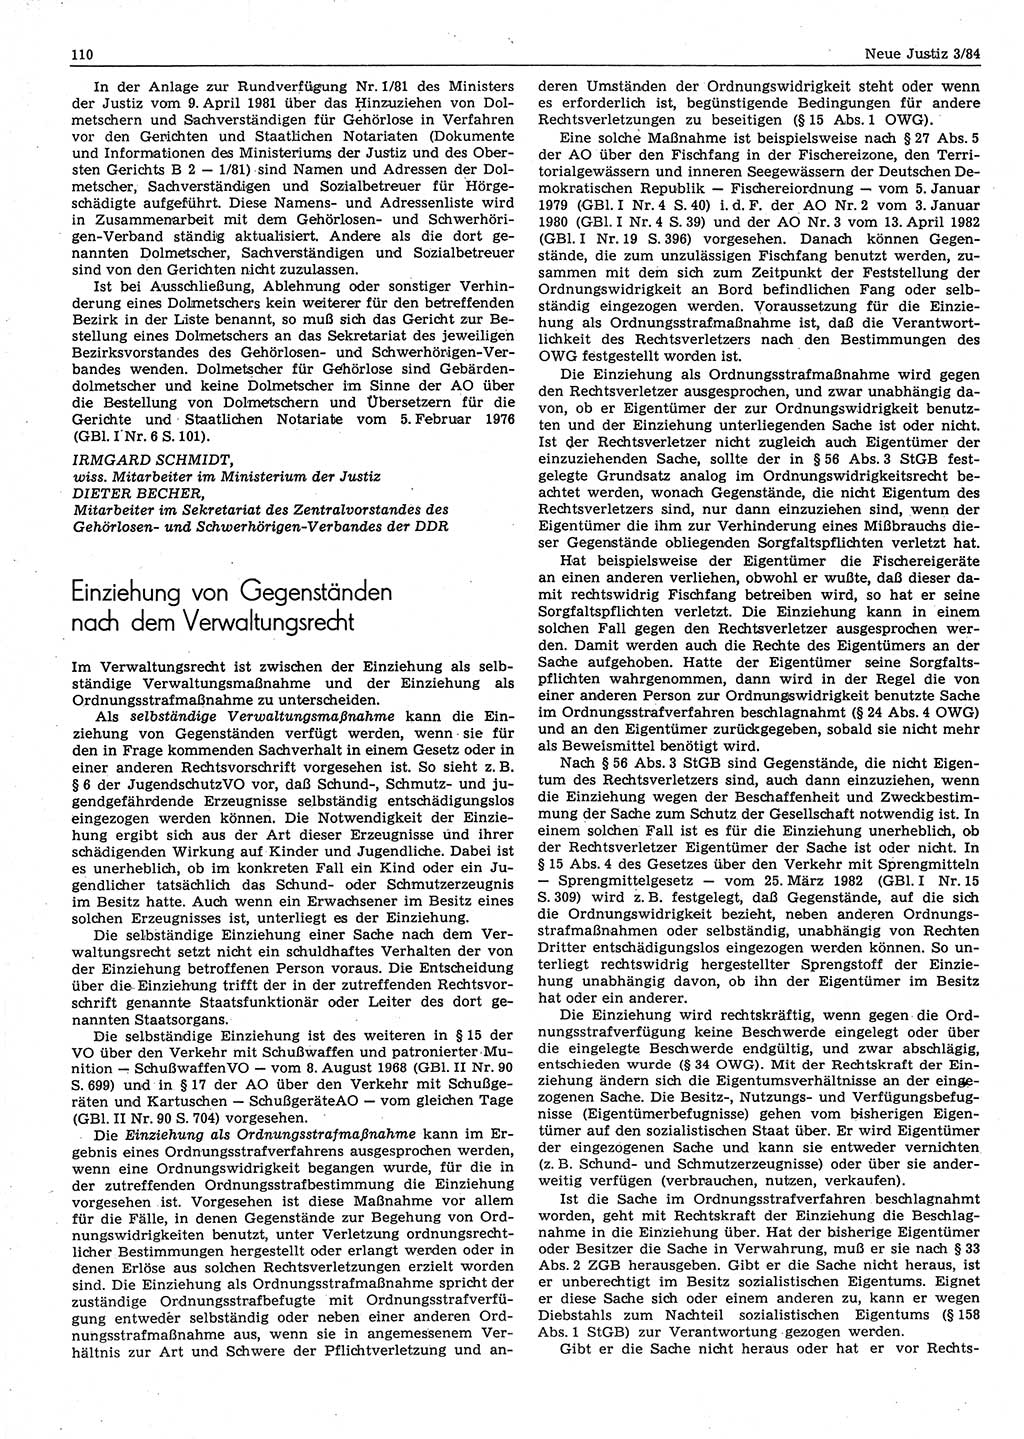 Neue Justiz (NJ), Zeitschrift für sozialistisches Recht und Gesetzlichkeit [Deutsche Demokratische Republik (DDR)], 38. Jahrgang 1984, Seite 110 (NJ DDR 1984, S. 110)